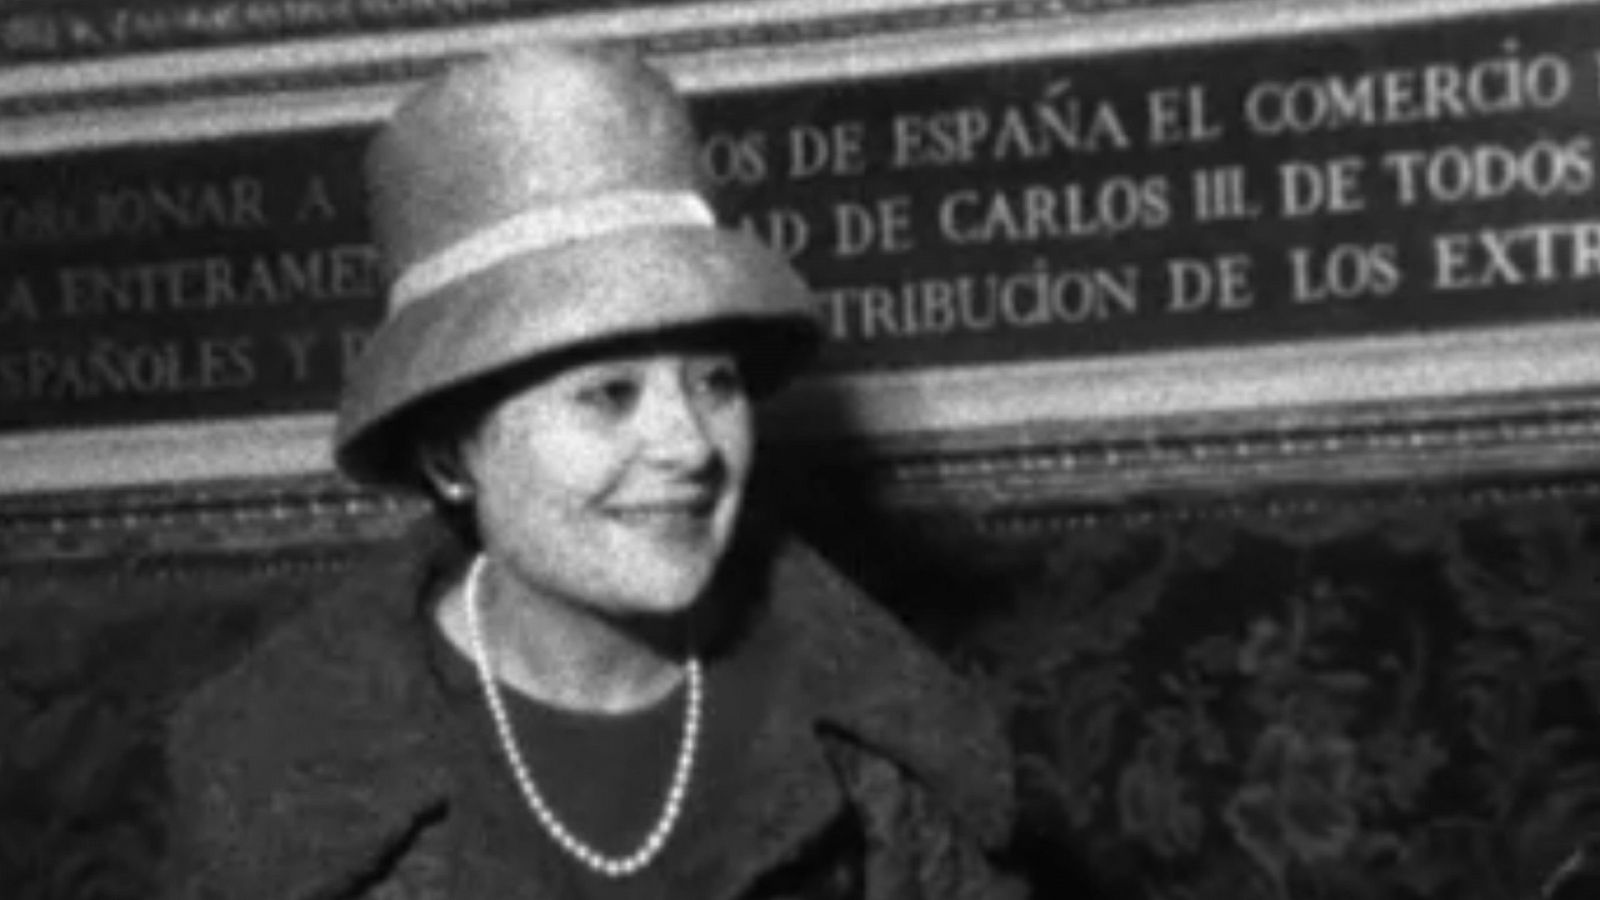 La soprano Victoria de los Ángeles dona un cheque para los afectados por las riadas de 1962